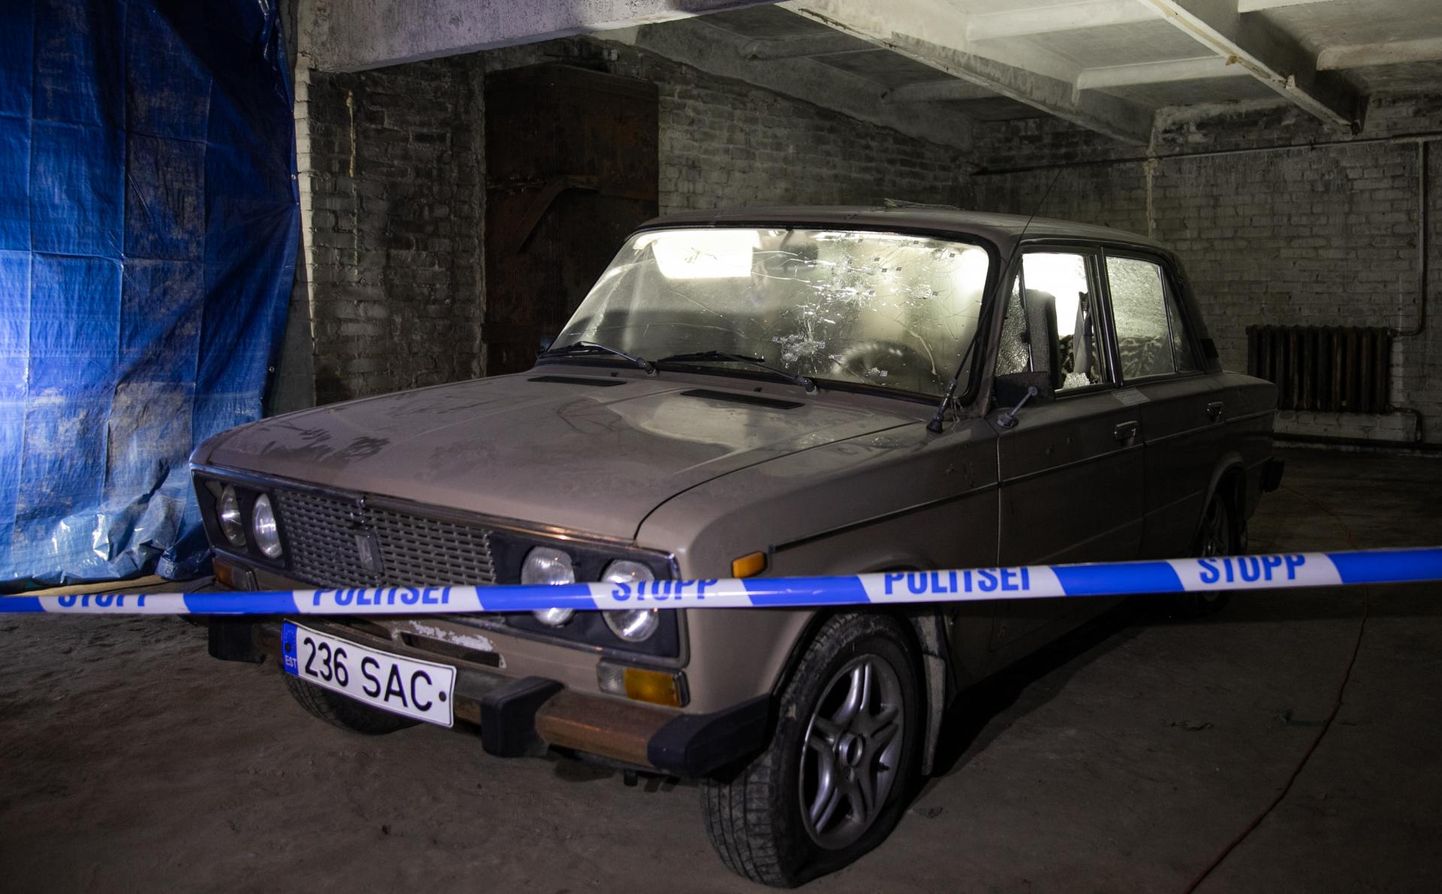 Lihula tulistaja relvast auklikuks lastud Žiguli jõudis Eesti politseimuuseumisse umbes kuu aega tagasi.